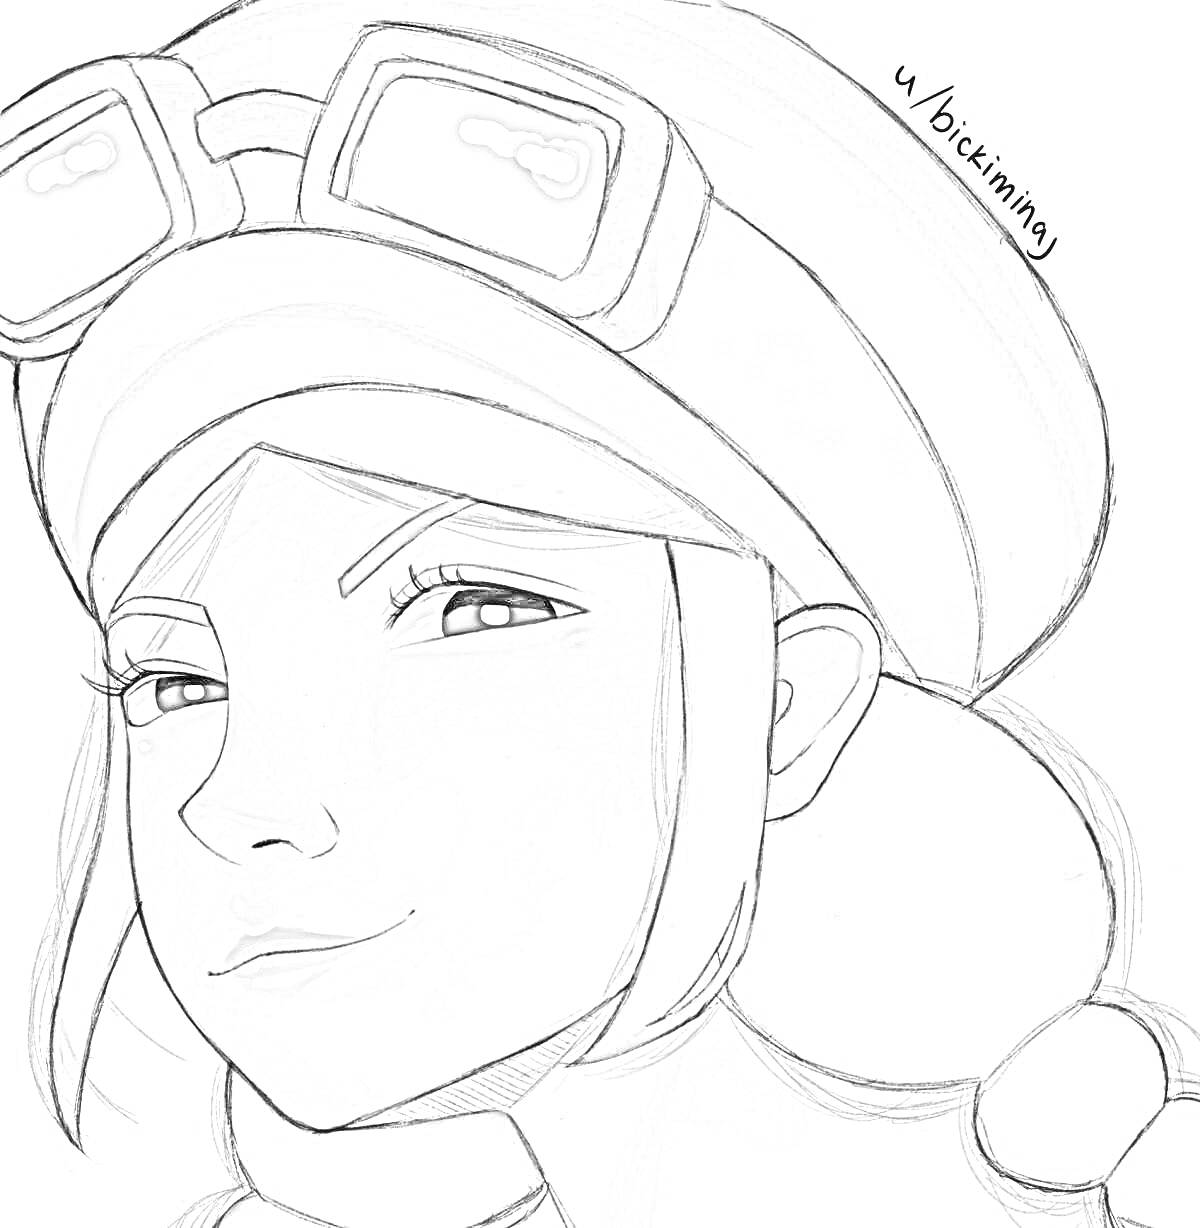 Раскраска Мэнди из игры Brawl Stars в пилотской шапке с очками и с рыжими волосами